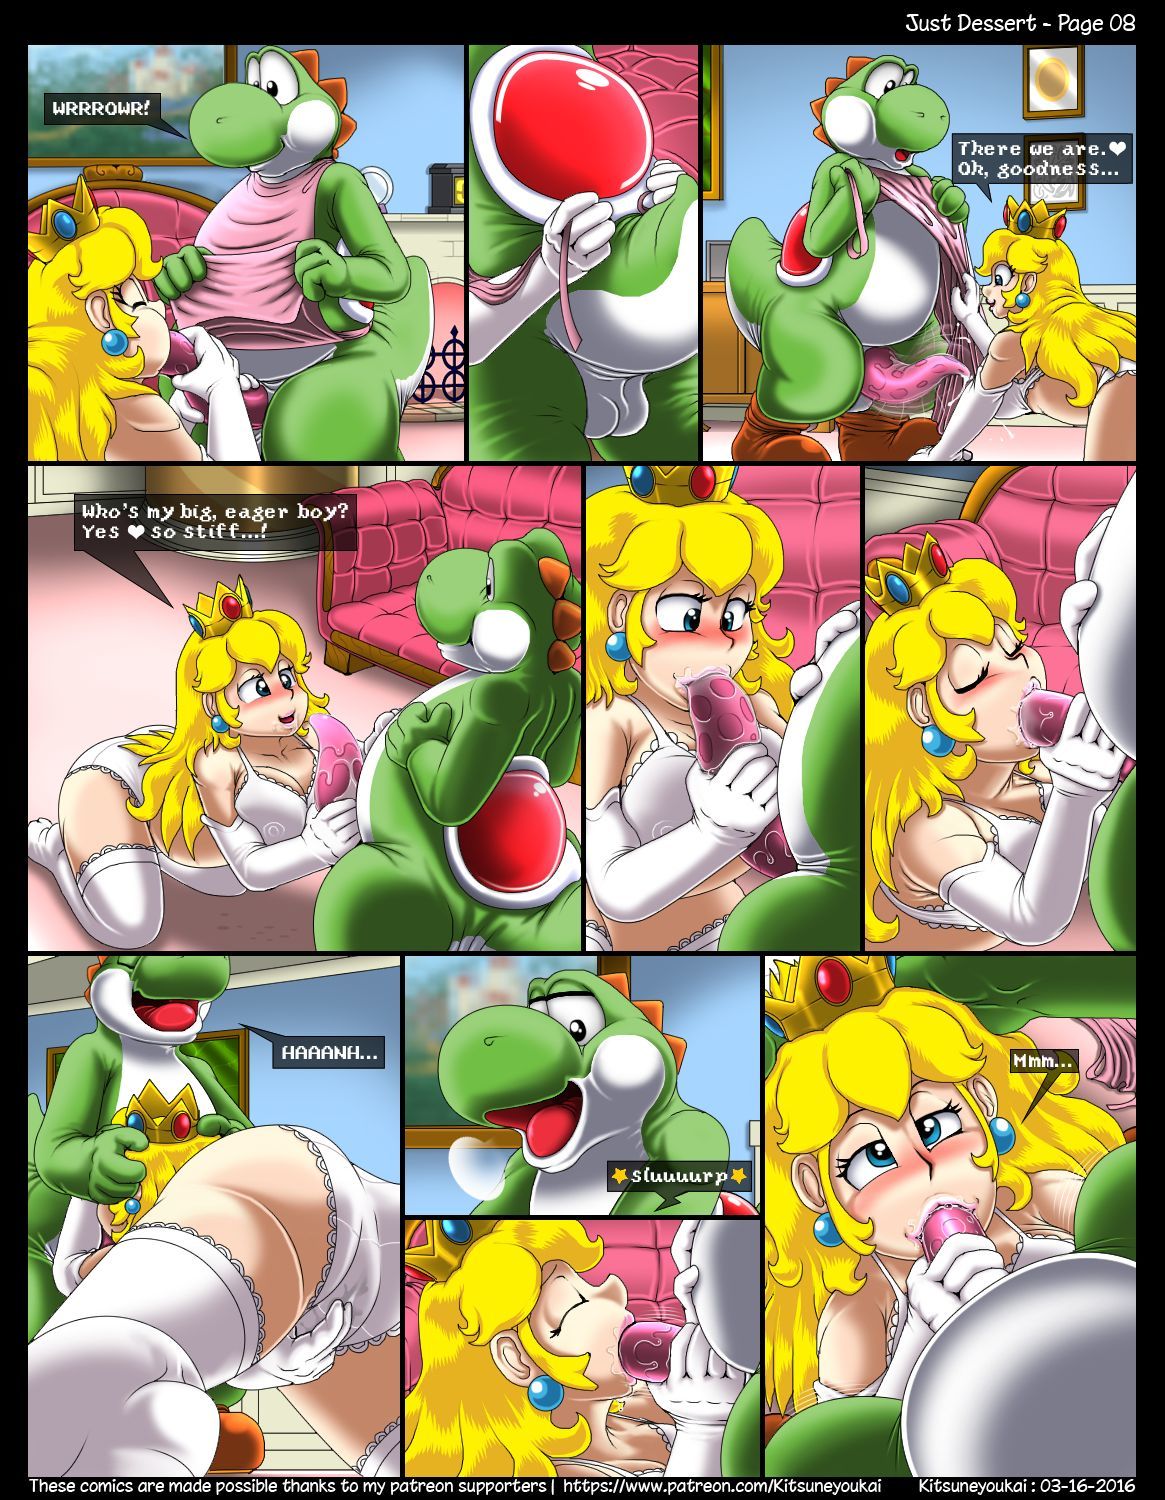 Kitsune Youkai - Just Dessert,Super Mario page 8